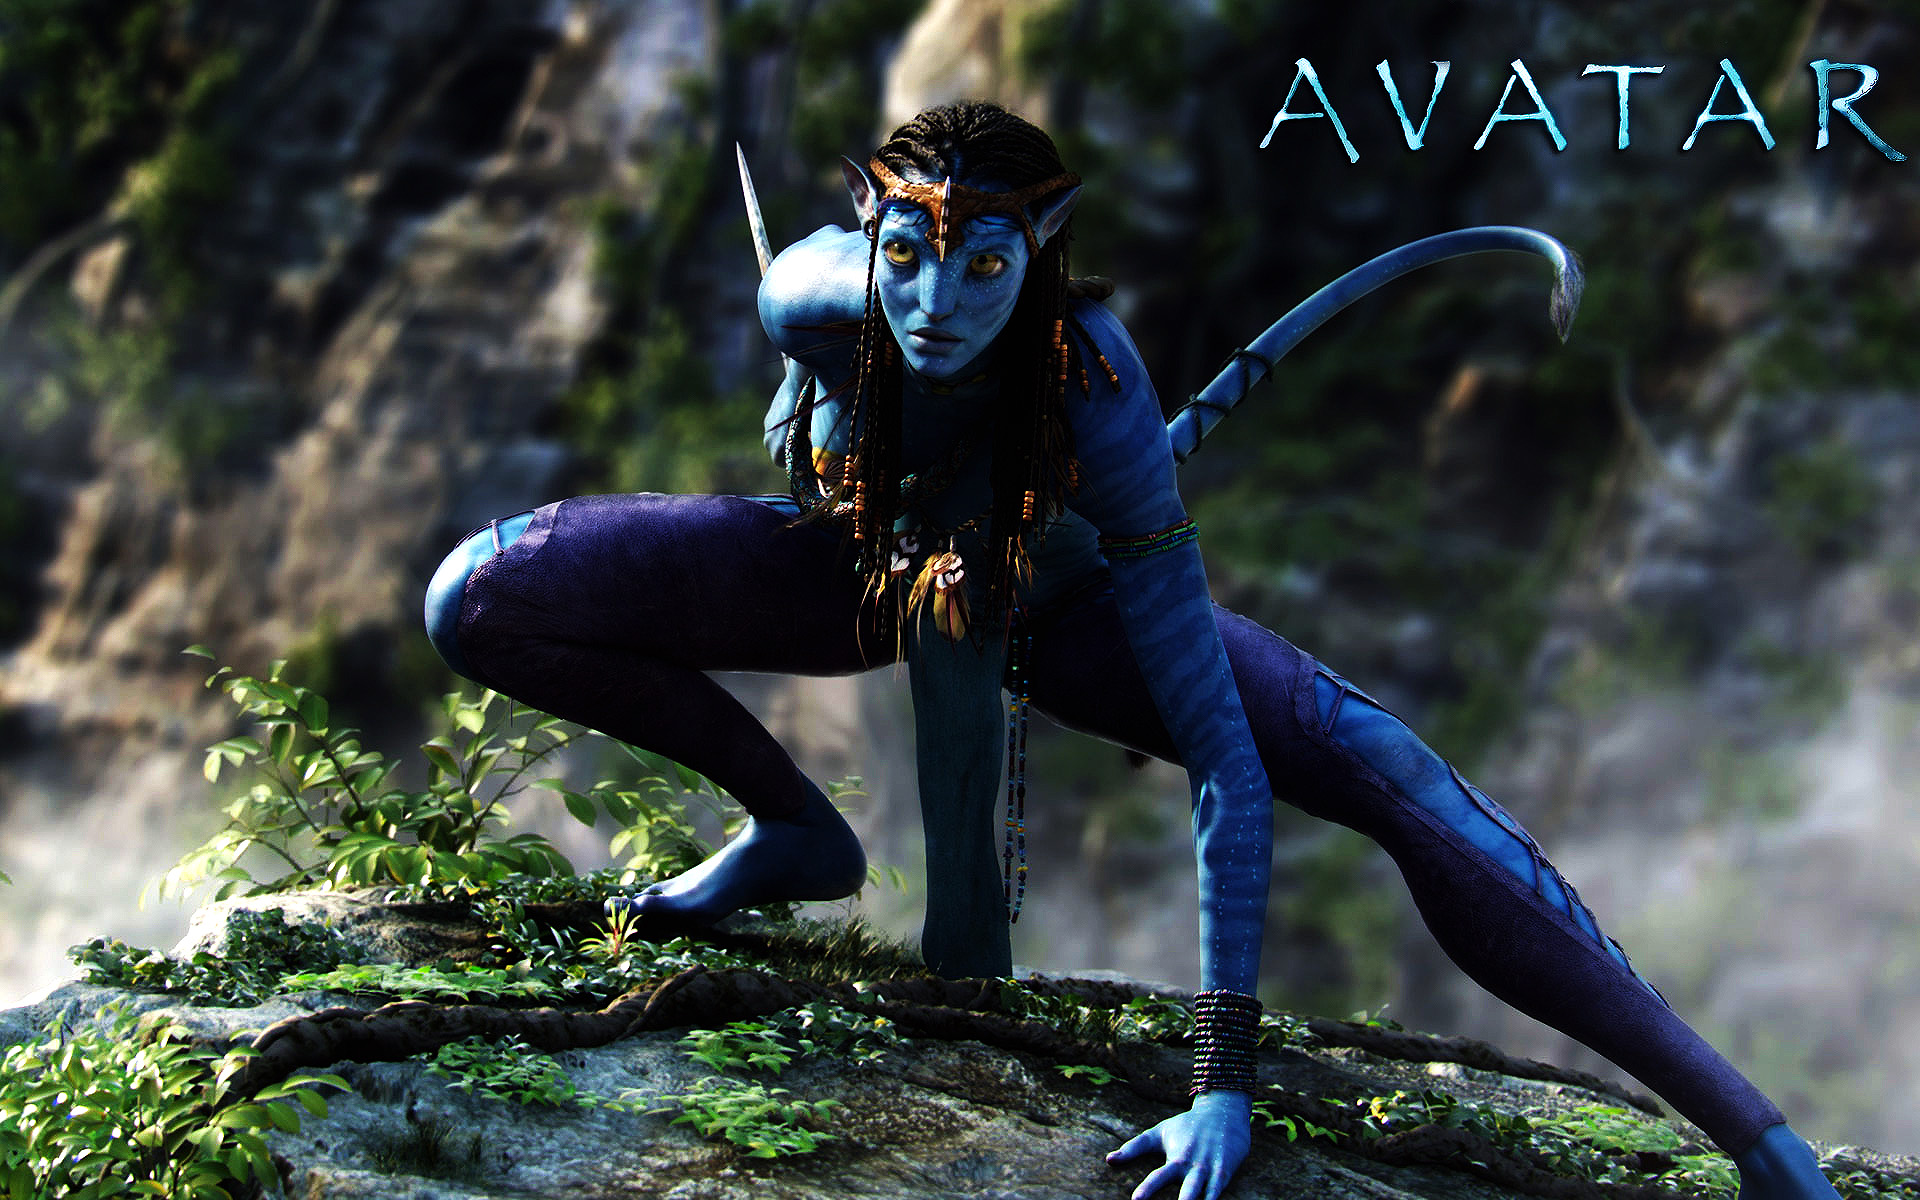 Avatar The Way Of Water đích thị là kỳ quan thế giới chứ không đơn thuần